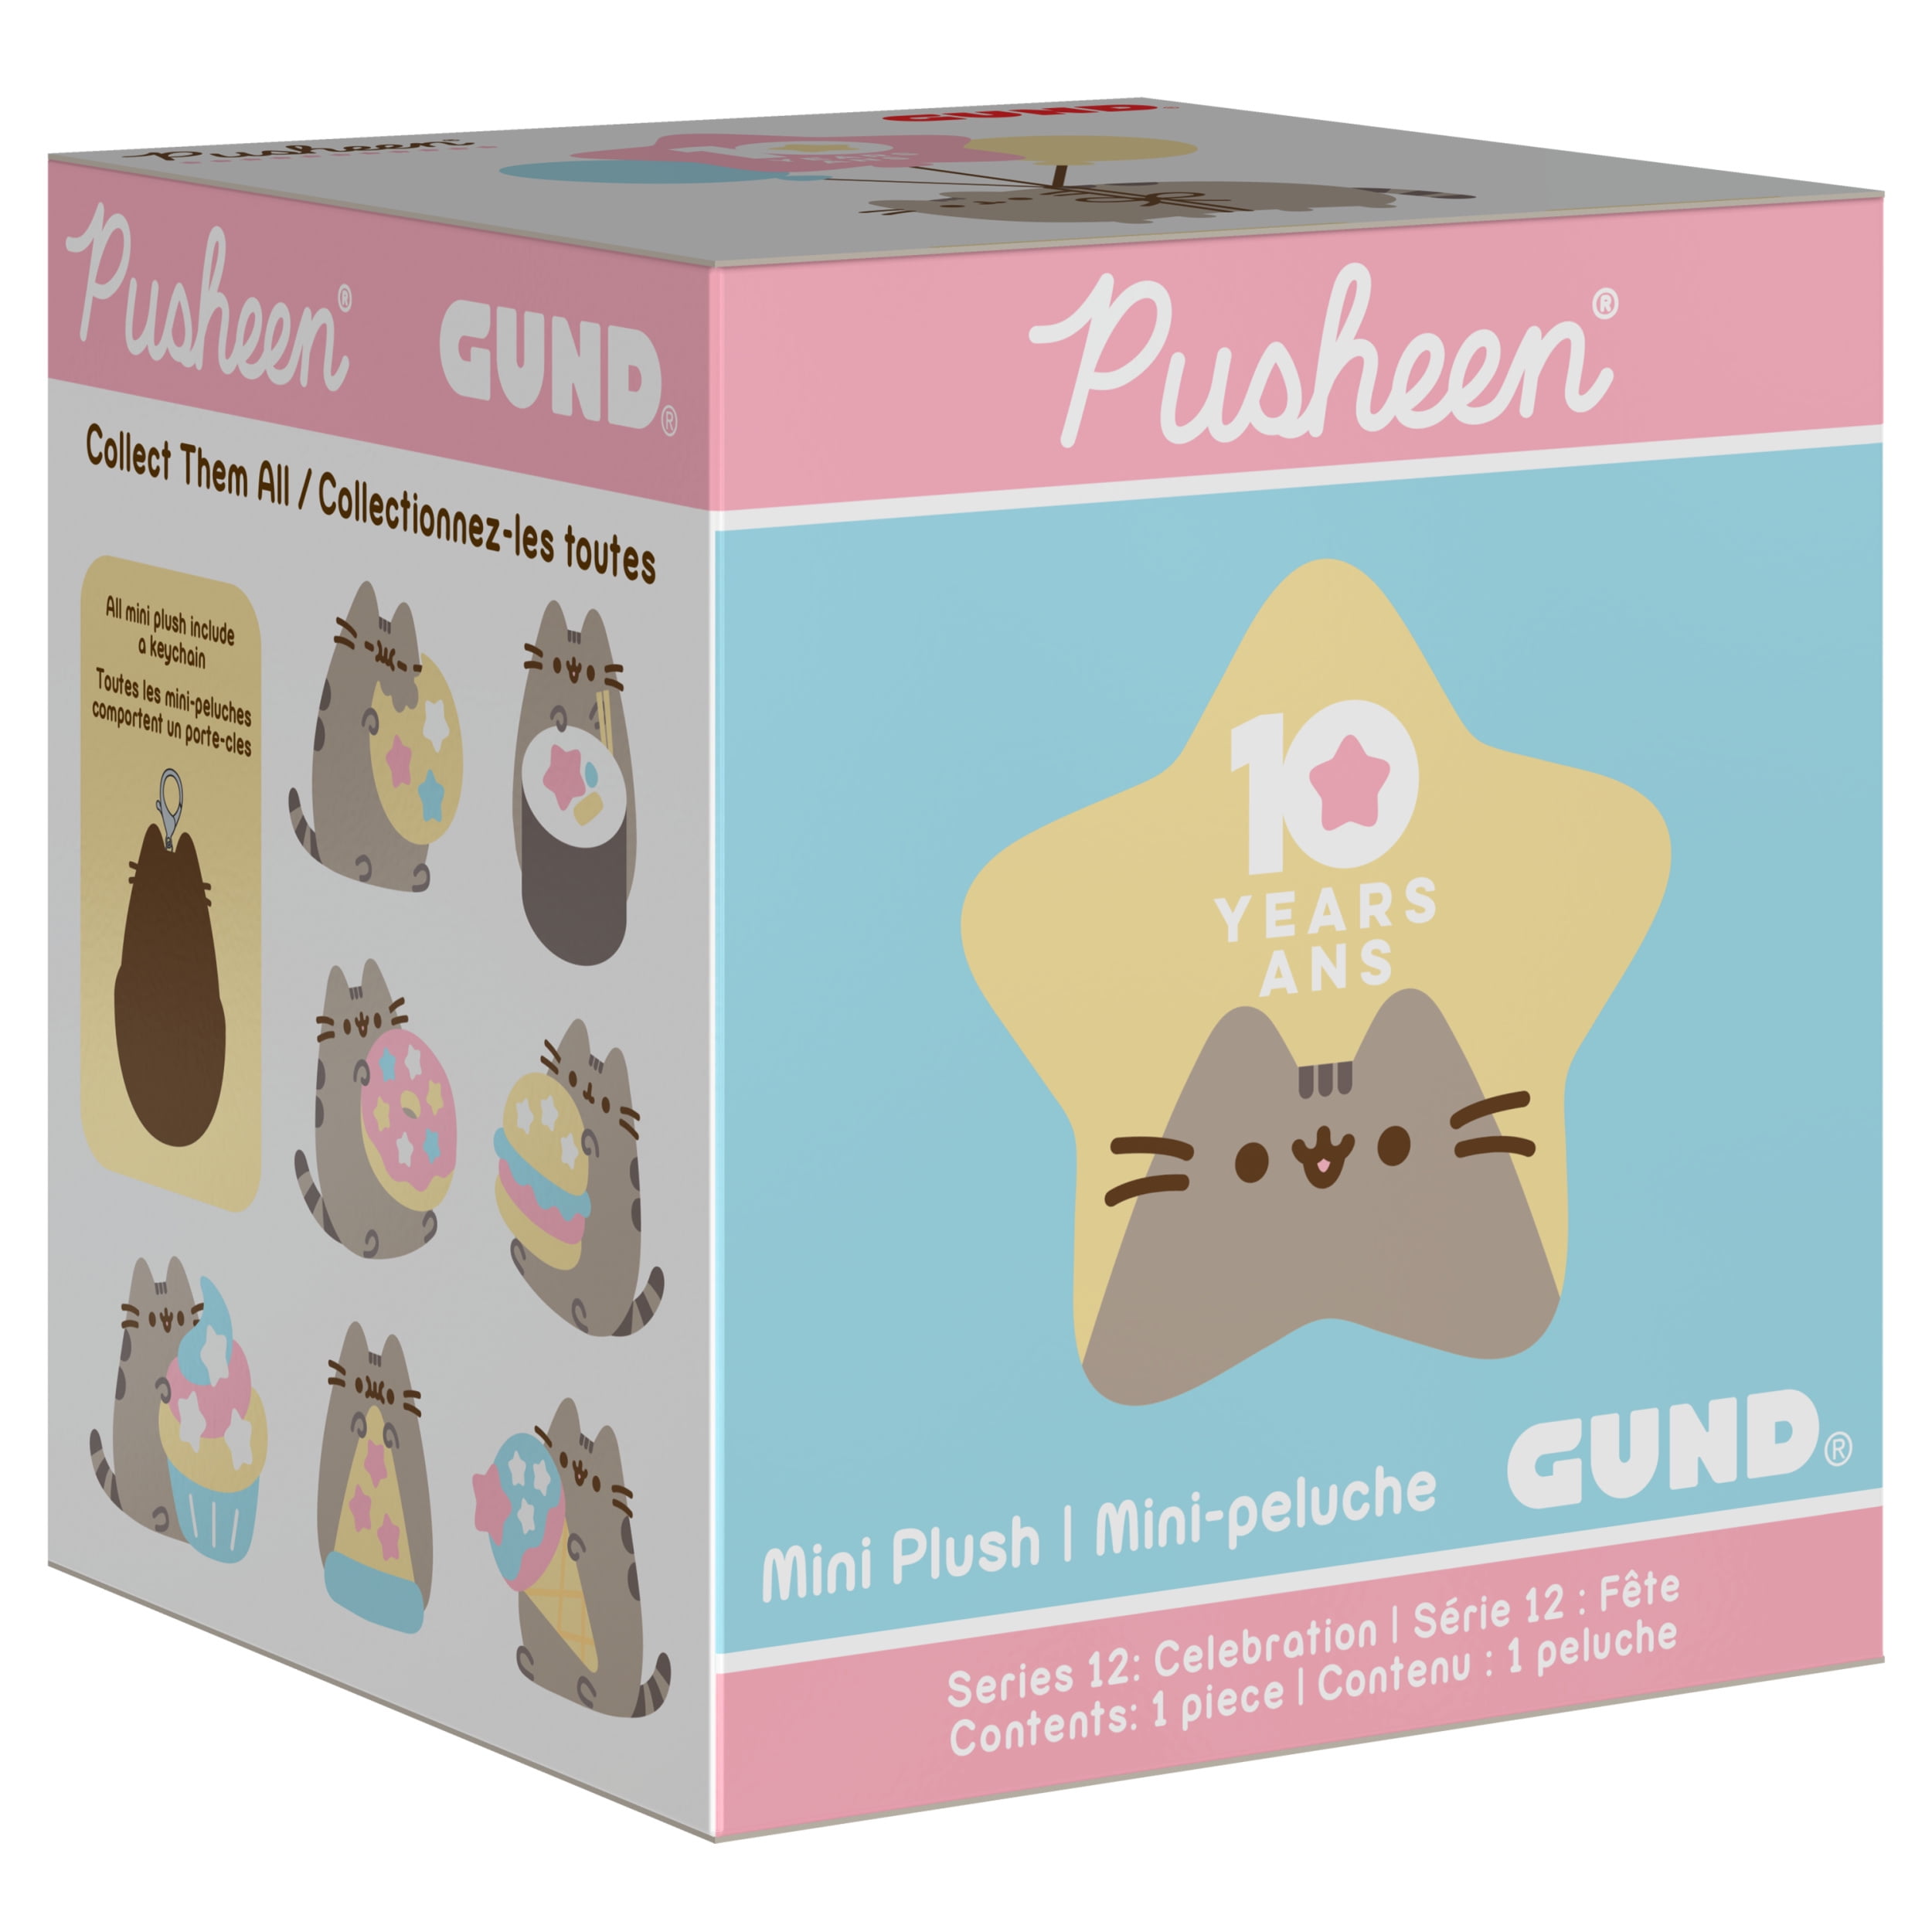 Gund NEW Pusheen Blind Box SUSHI Celebration Anniversary Plush Cat Series 12 